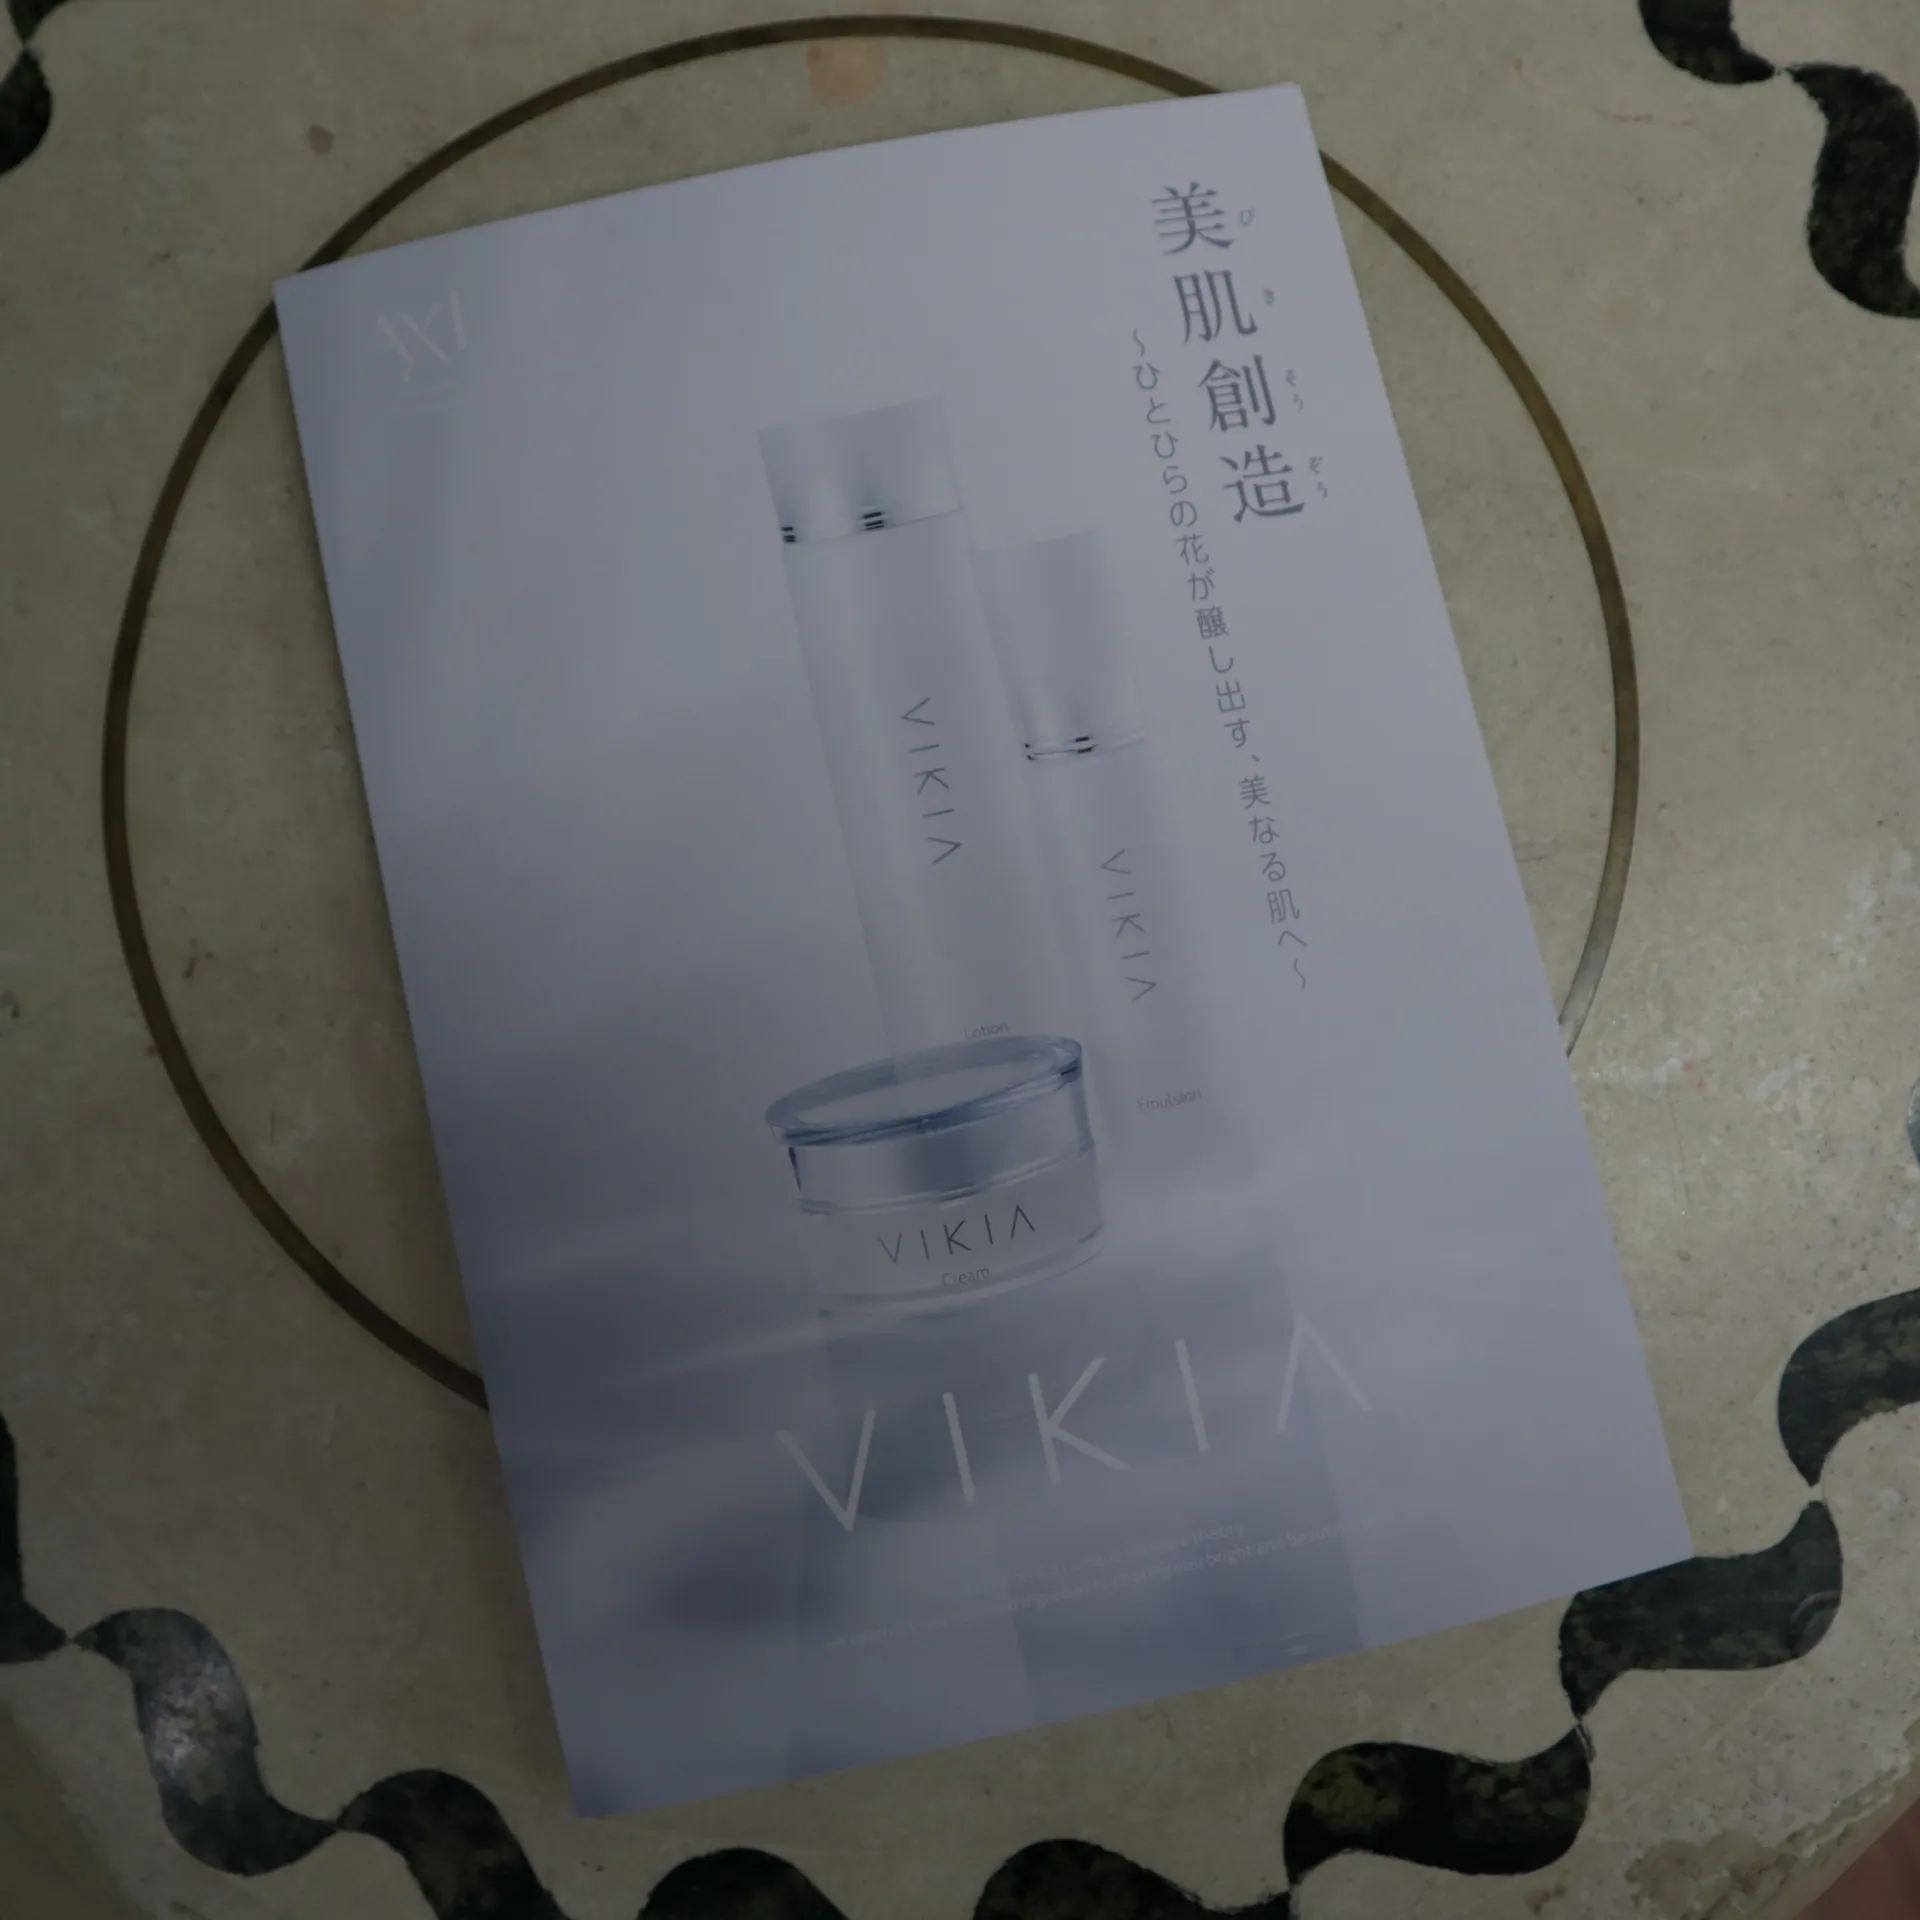 美白の出来る透明感スキンケアAXI VIKIAが選ばれる理由3選 | ブログ